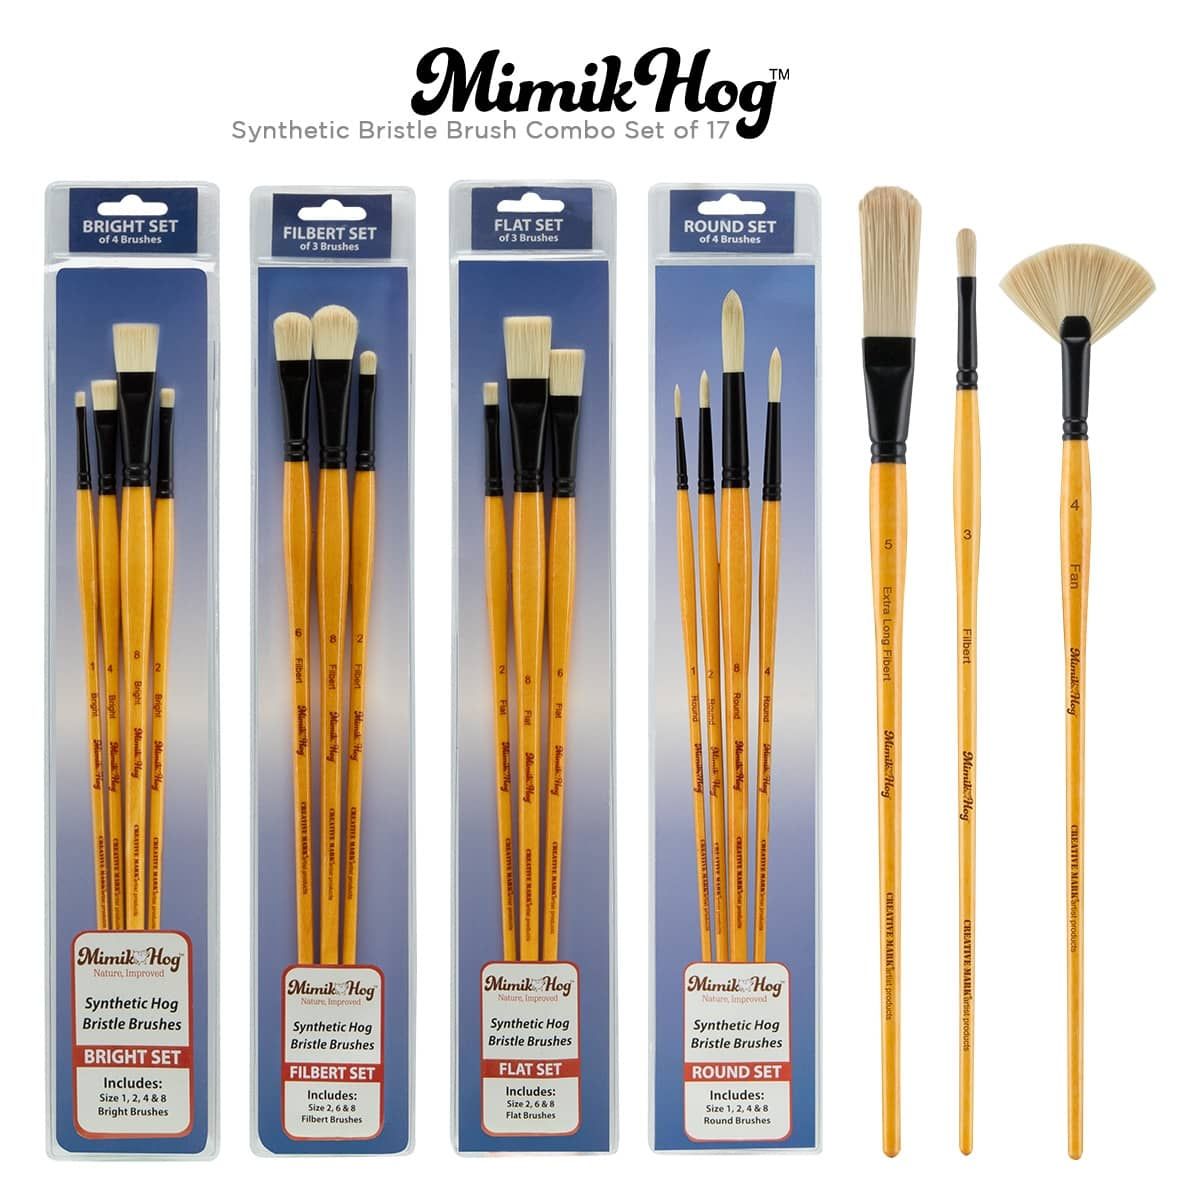 Mimik Hog Synthetic Bristle Brush 17 Piece Set